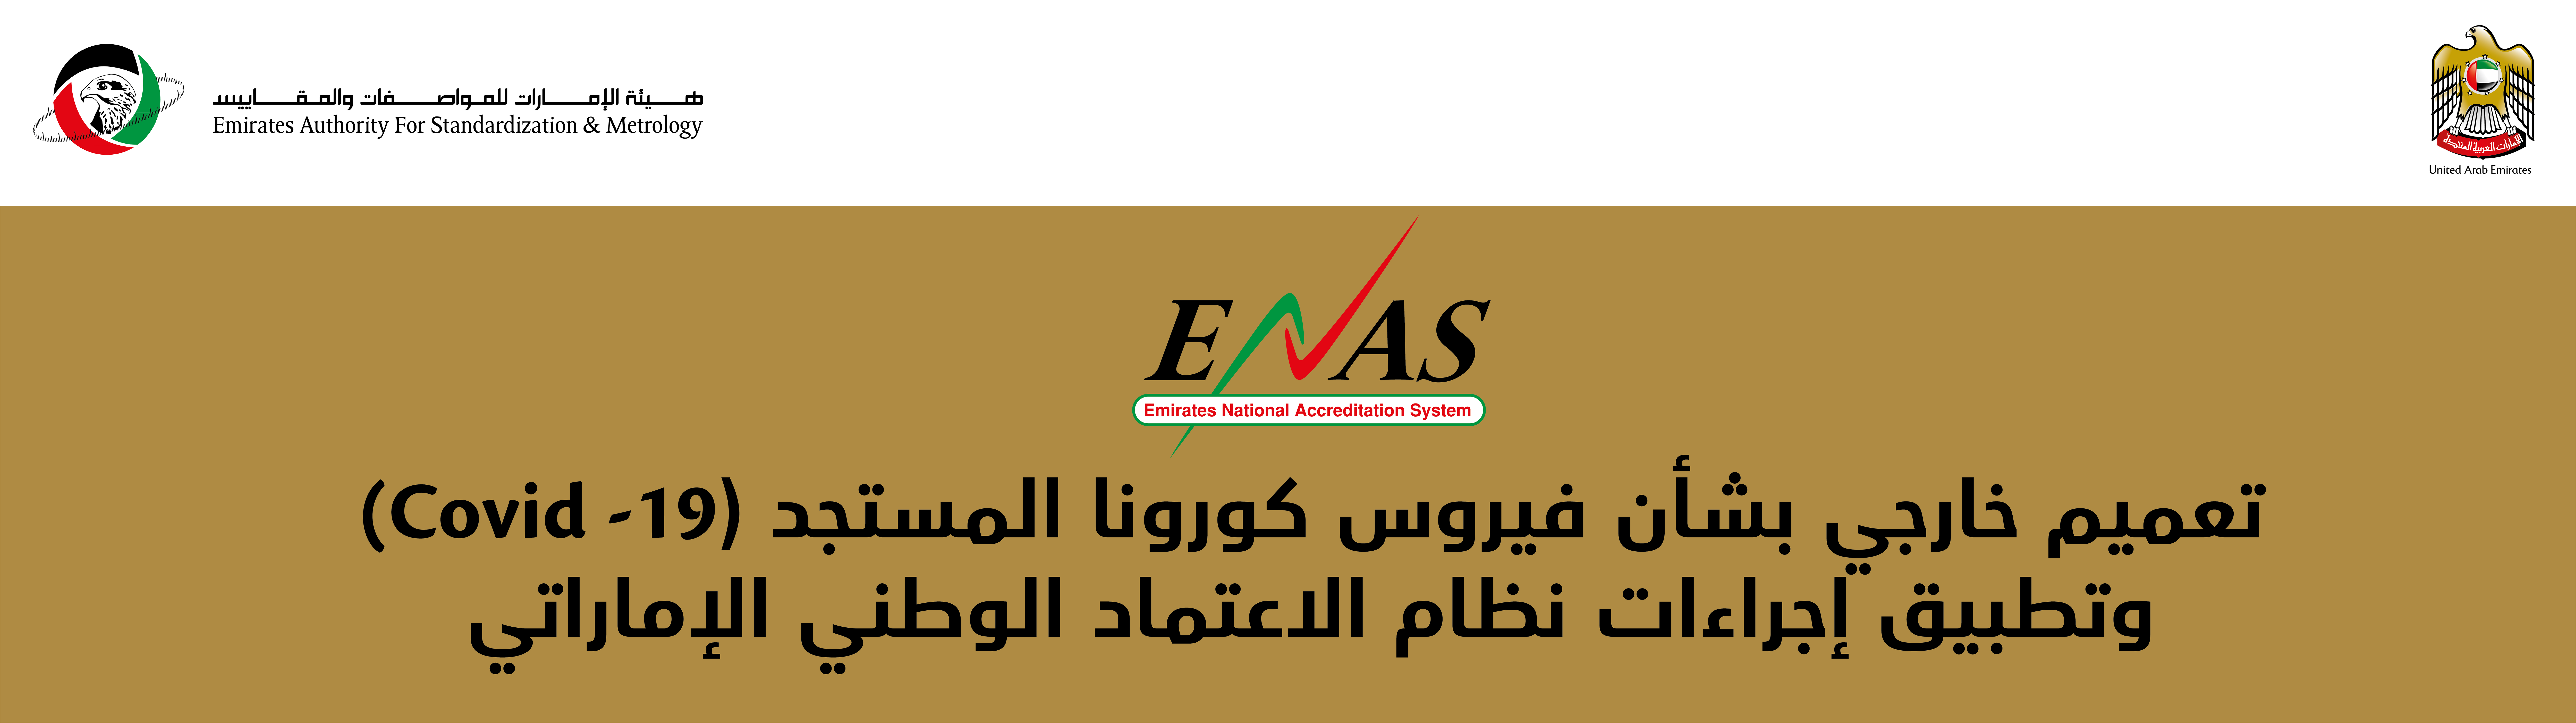 阿联酋ESAS认证(图1)